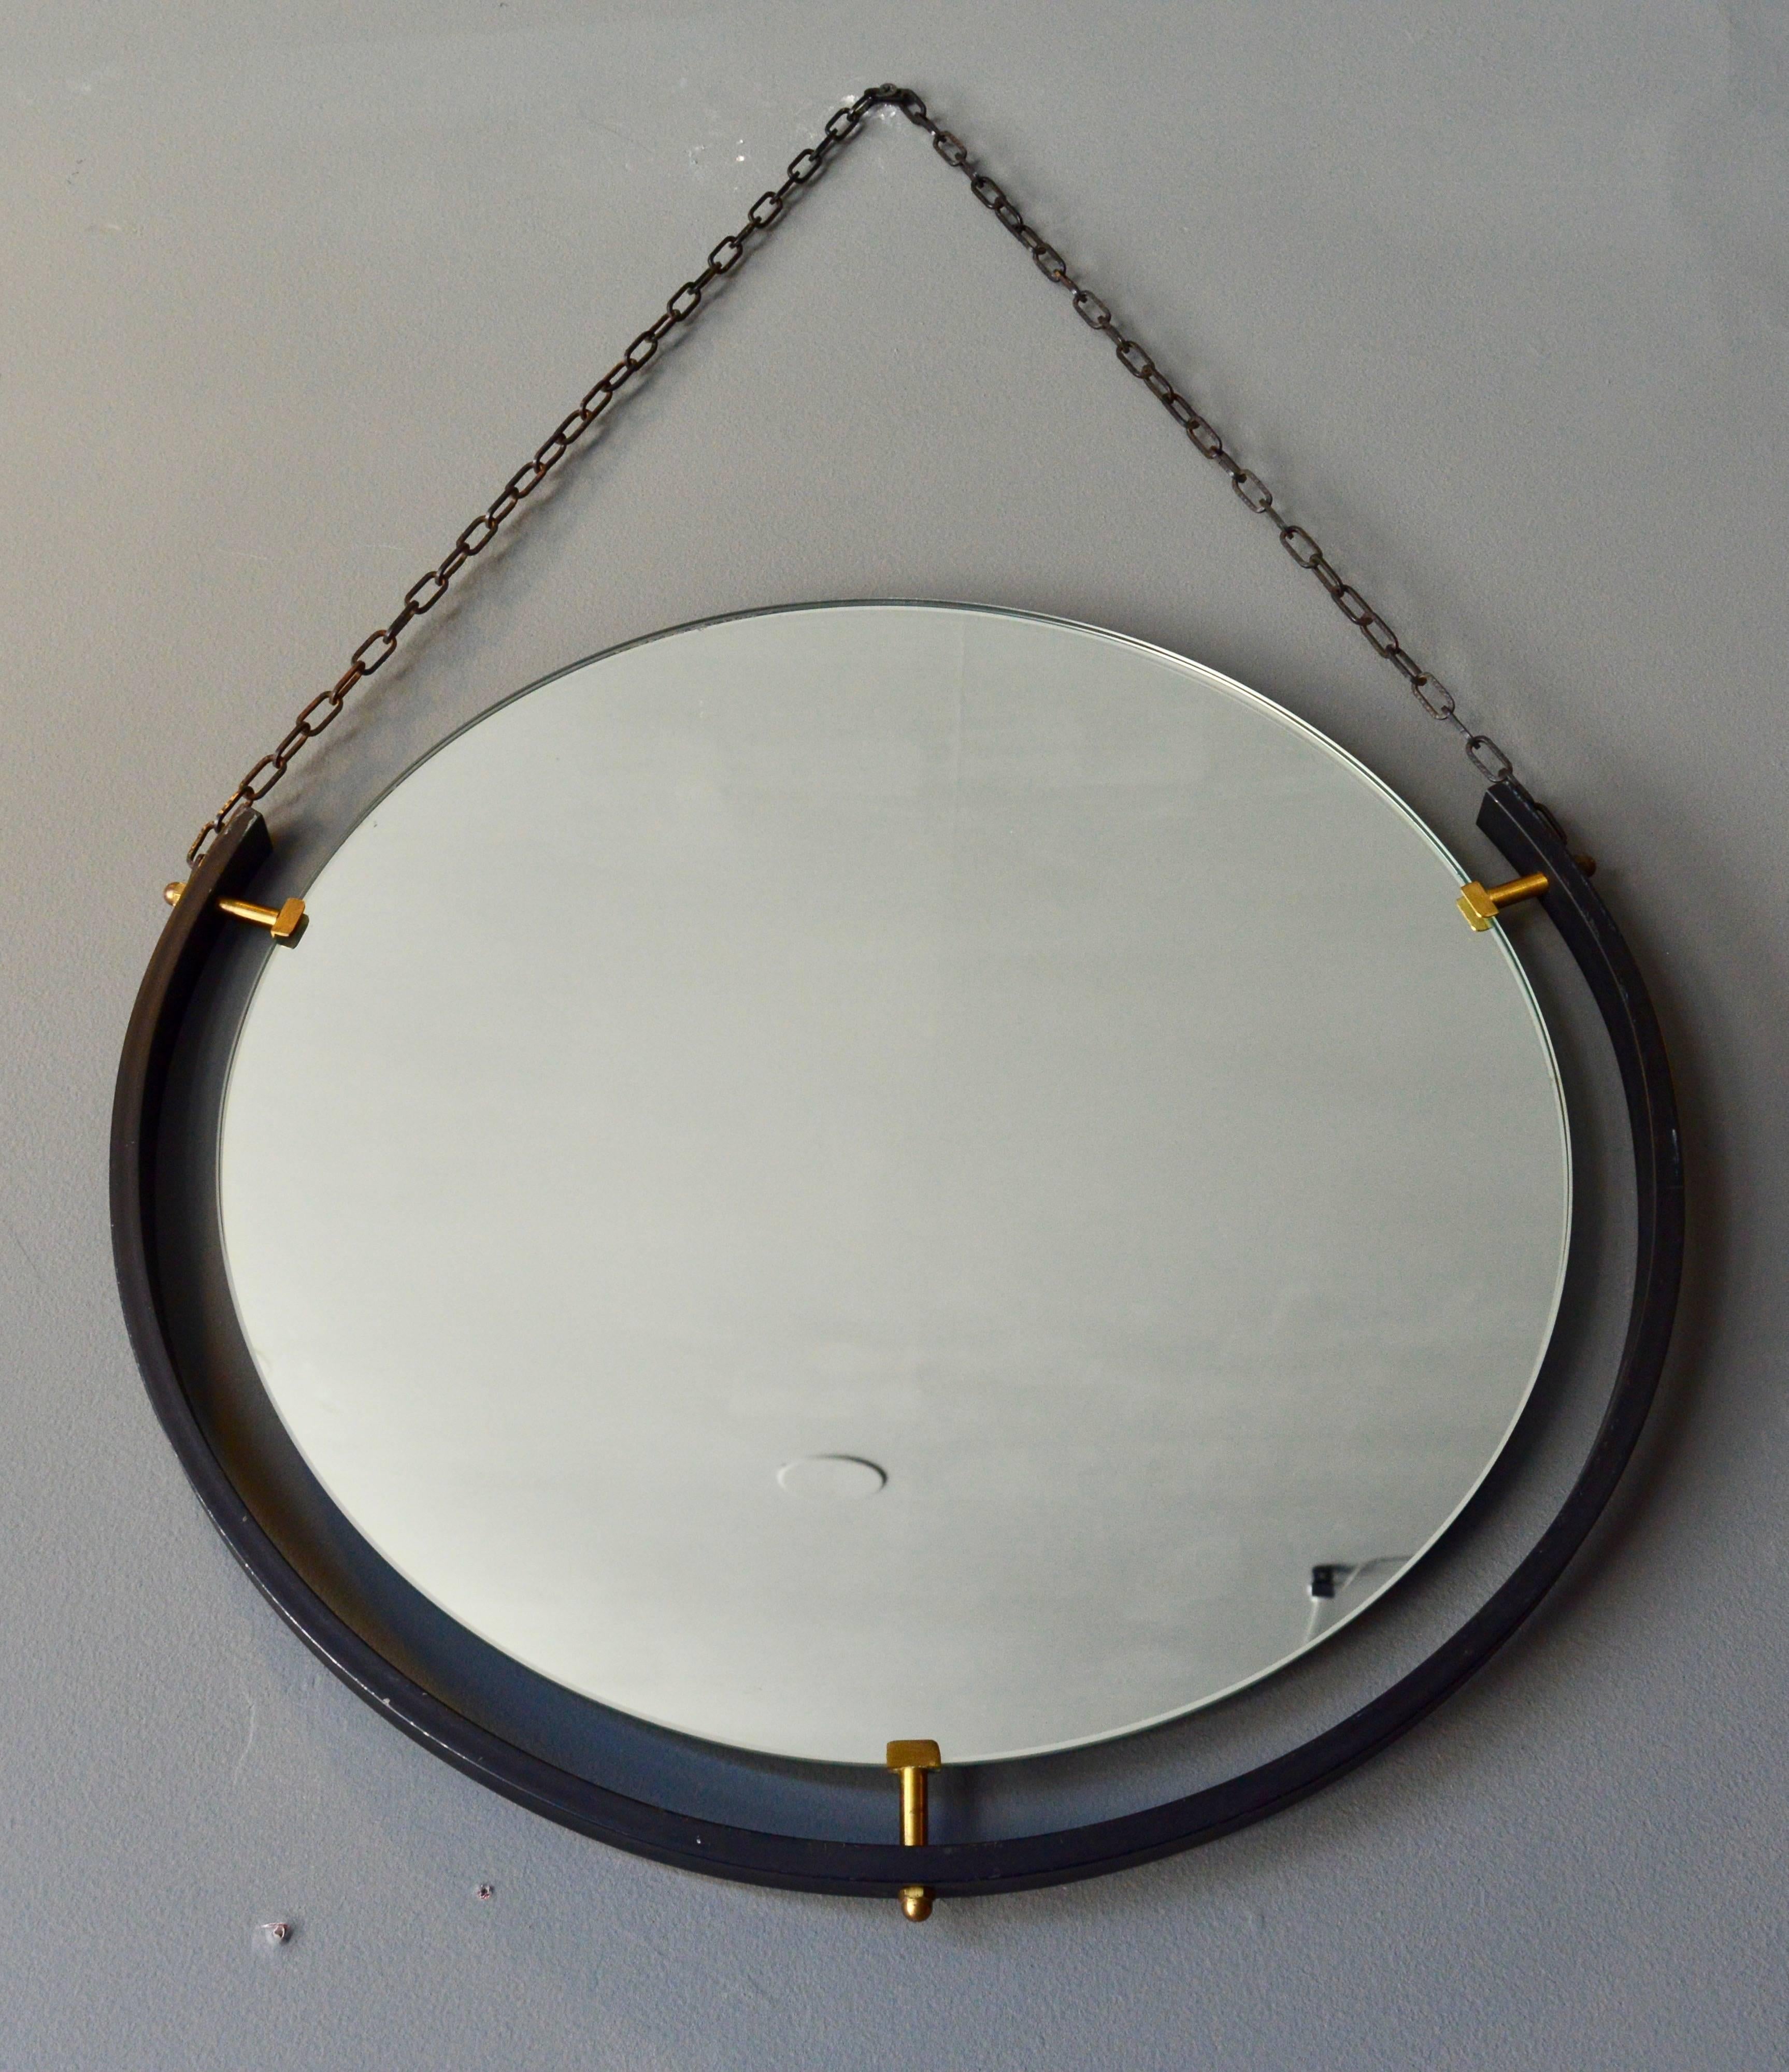 Fantastique ensemble de miroirs flottants italiens vintage suspendus par une chaîne en métal. Un miroir a une chaîne noire. Le deuxième miroir a une chaîne en laiton. Le troisième miroir a une chaîne en corde. Il est facile de changer la chaîne et